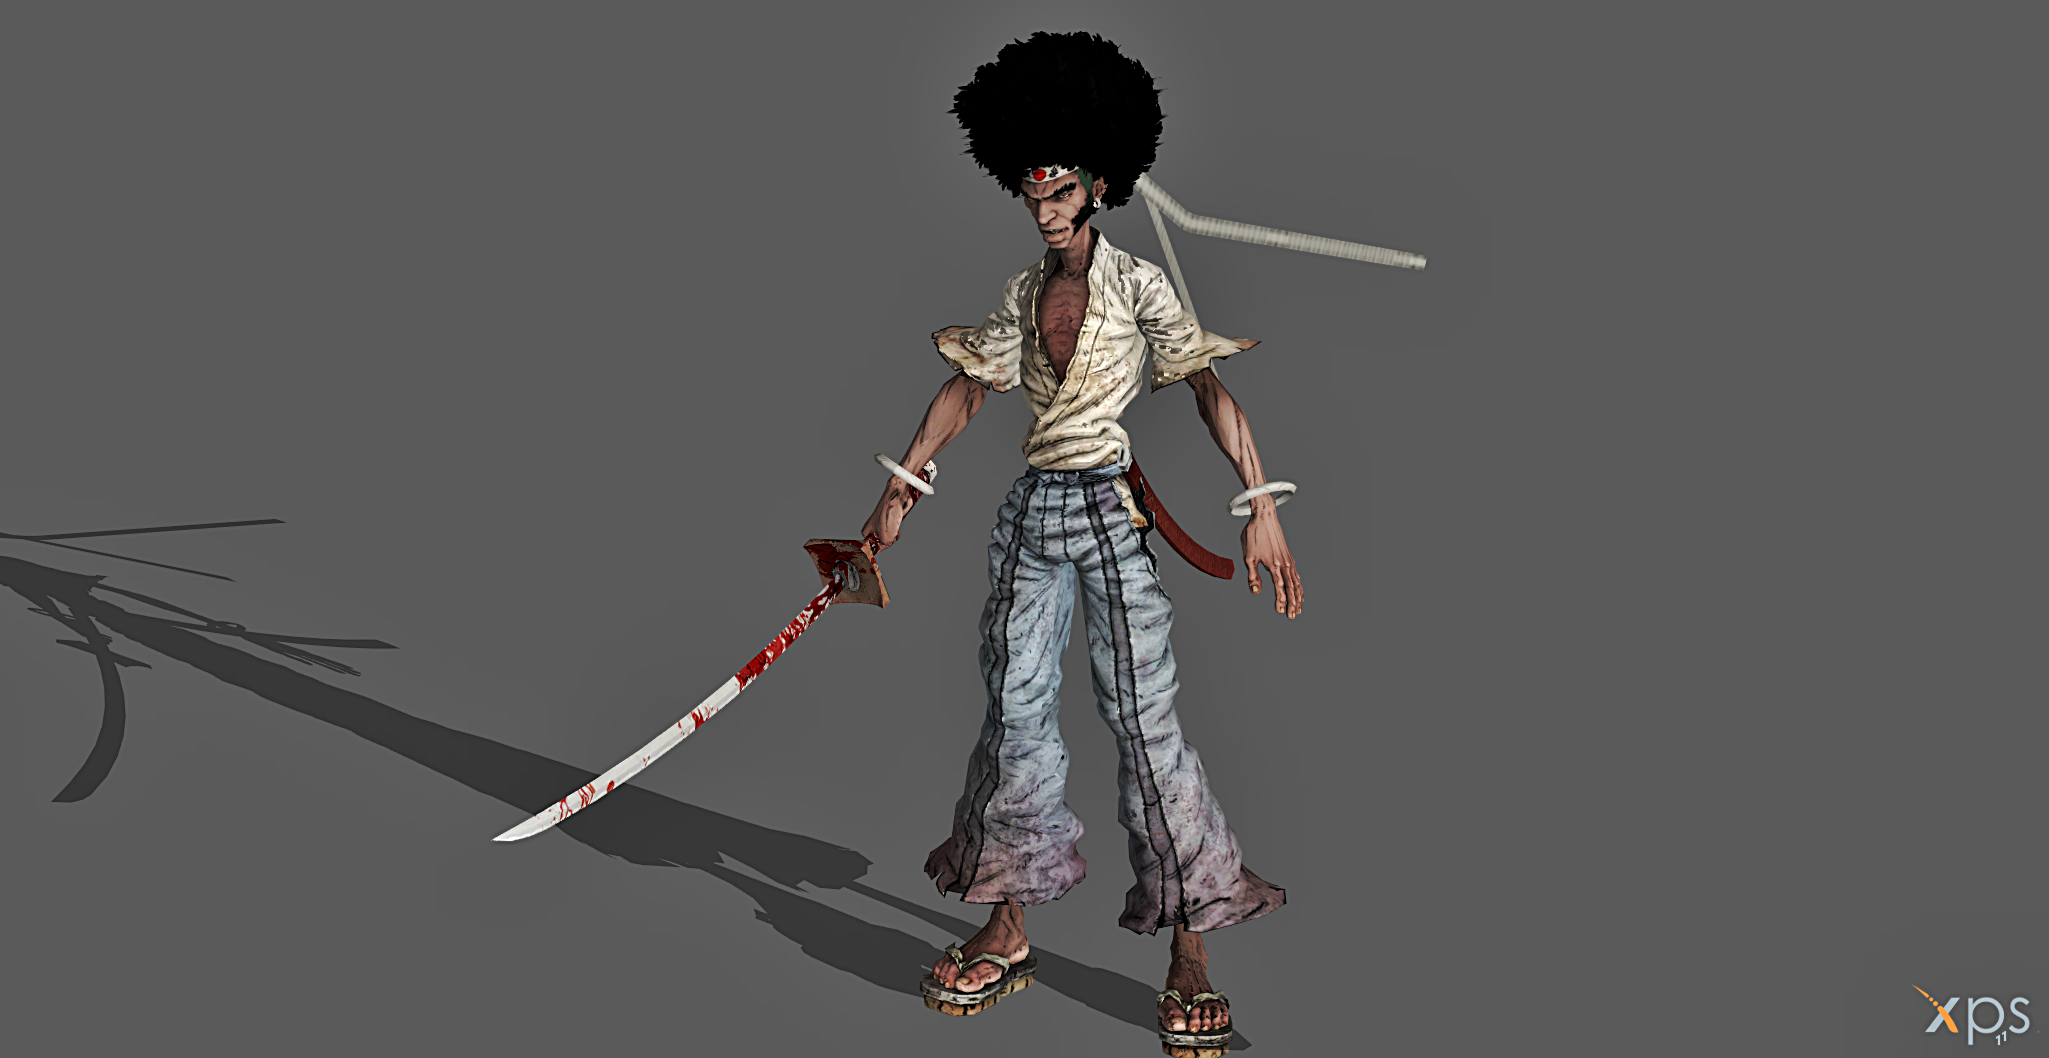 XPS} Afro Samurai by MyllaDinX on DeviantArt